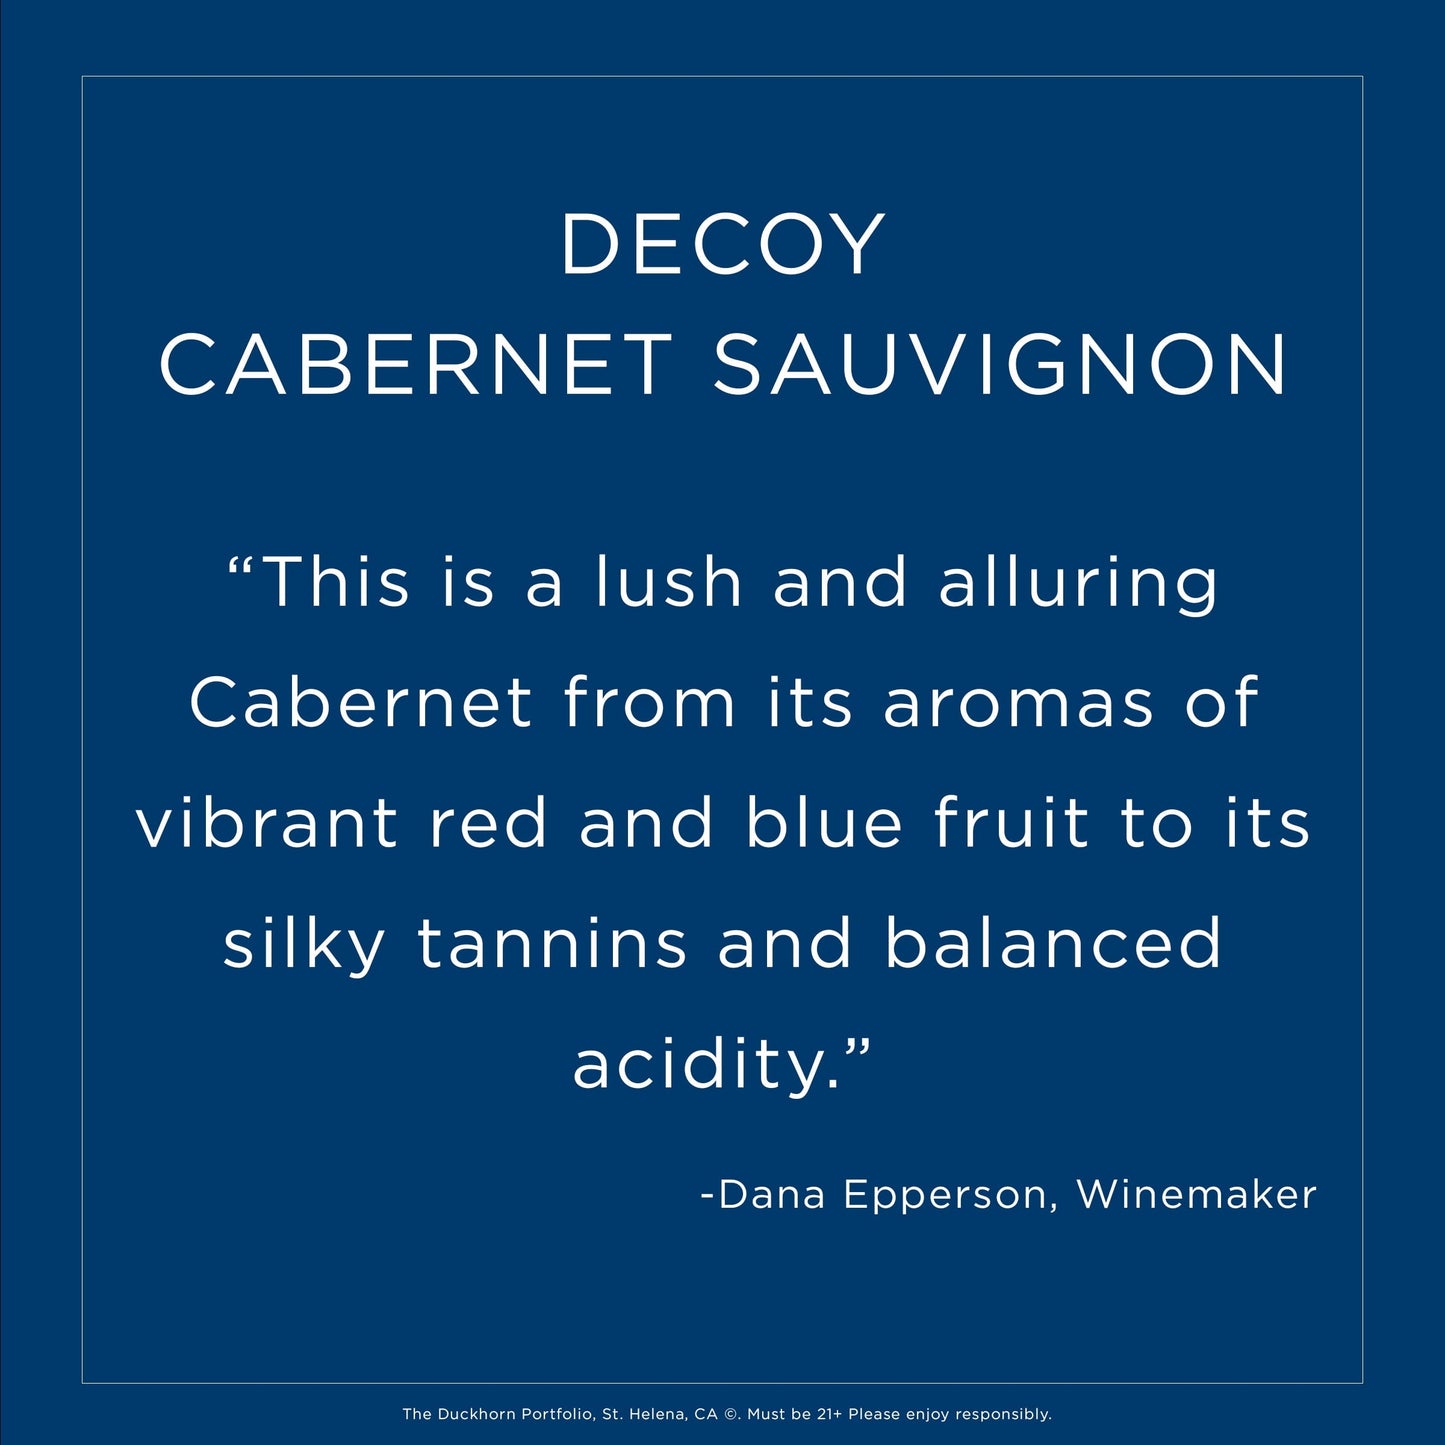 Decoy Cabernet Sauvignon Wine, 750 ml, Bottle